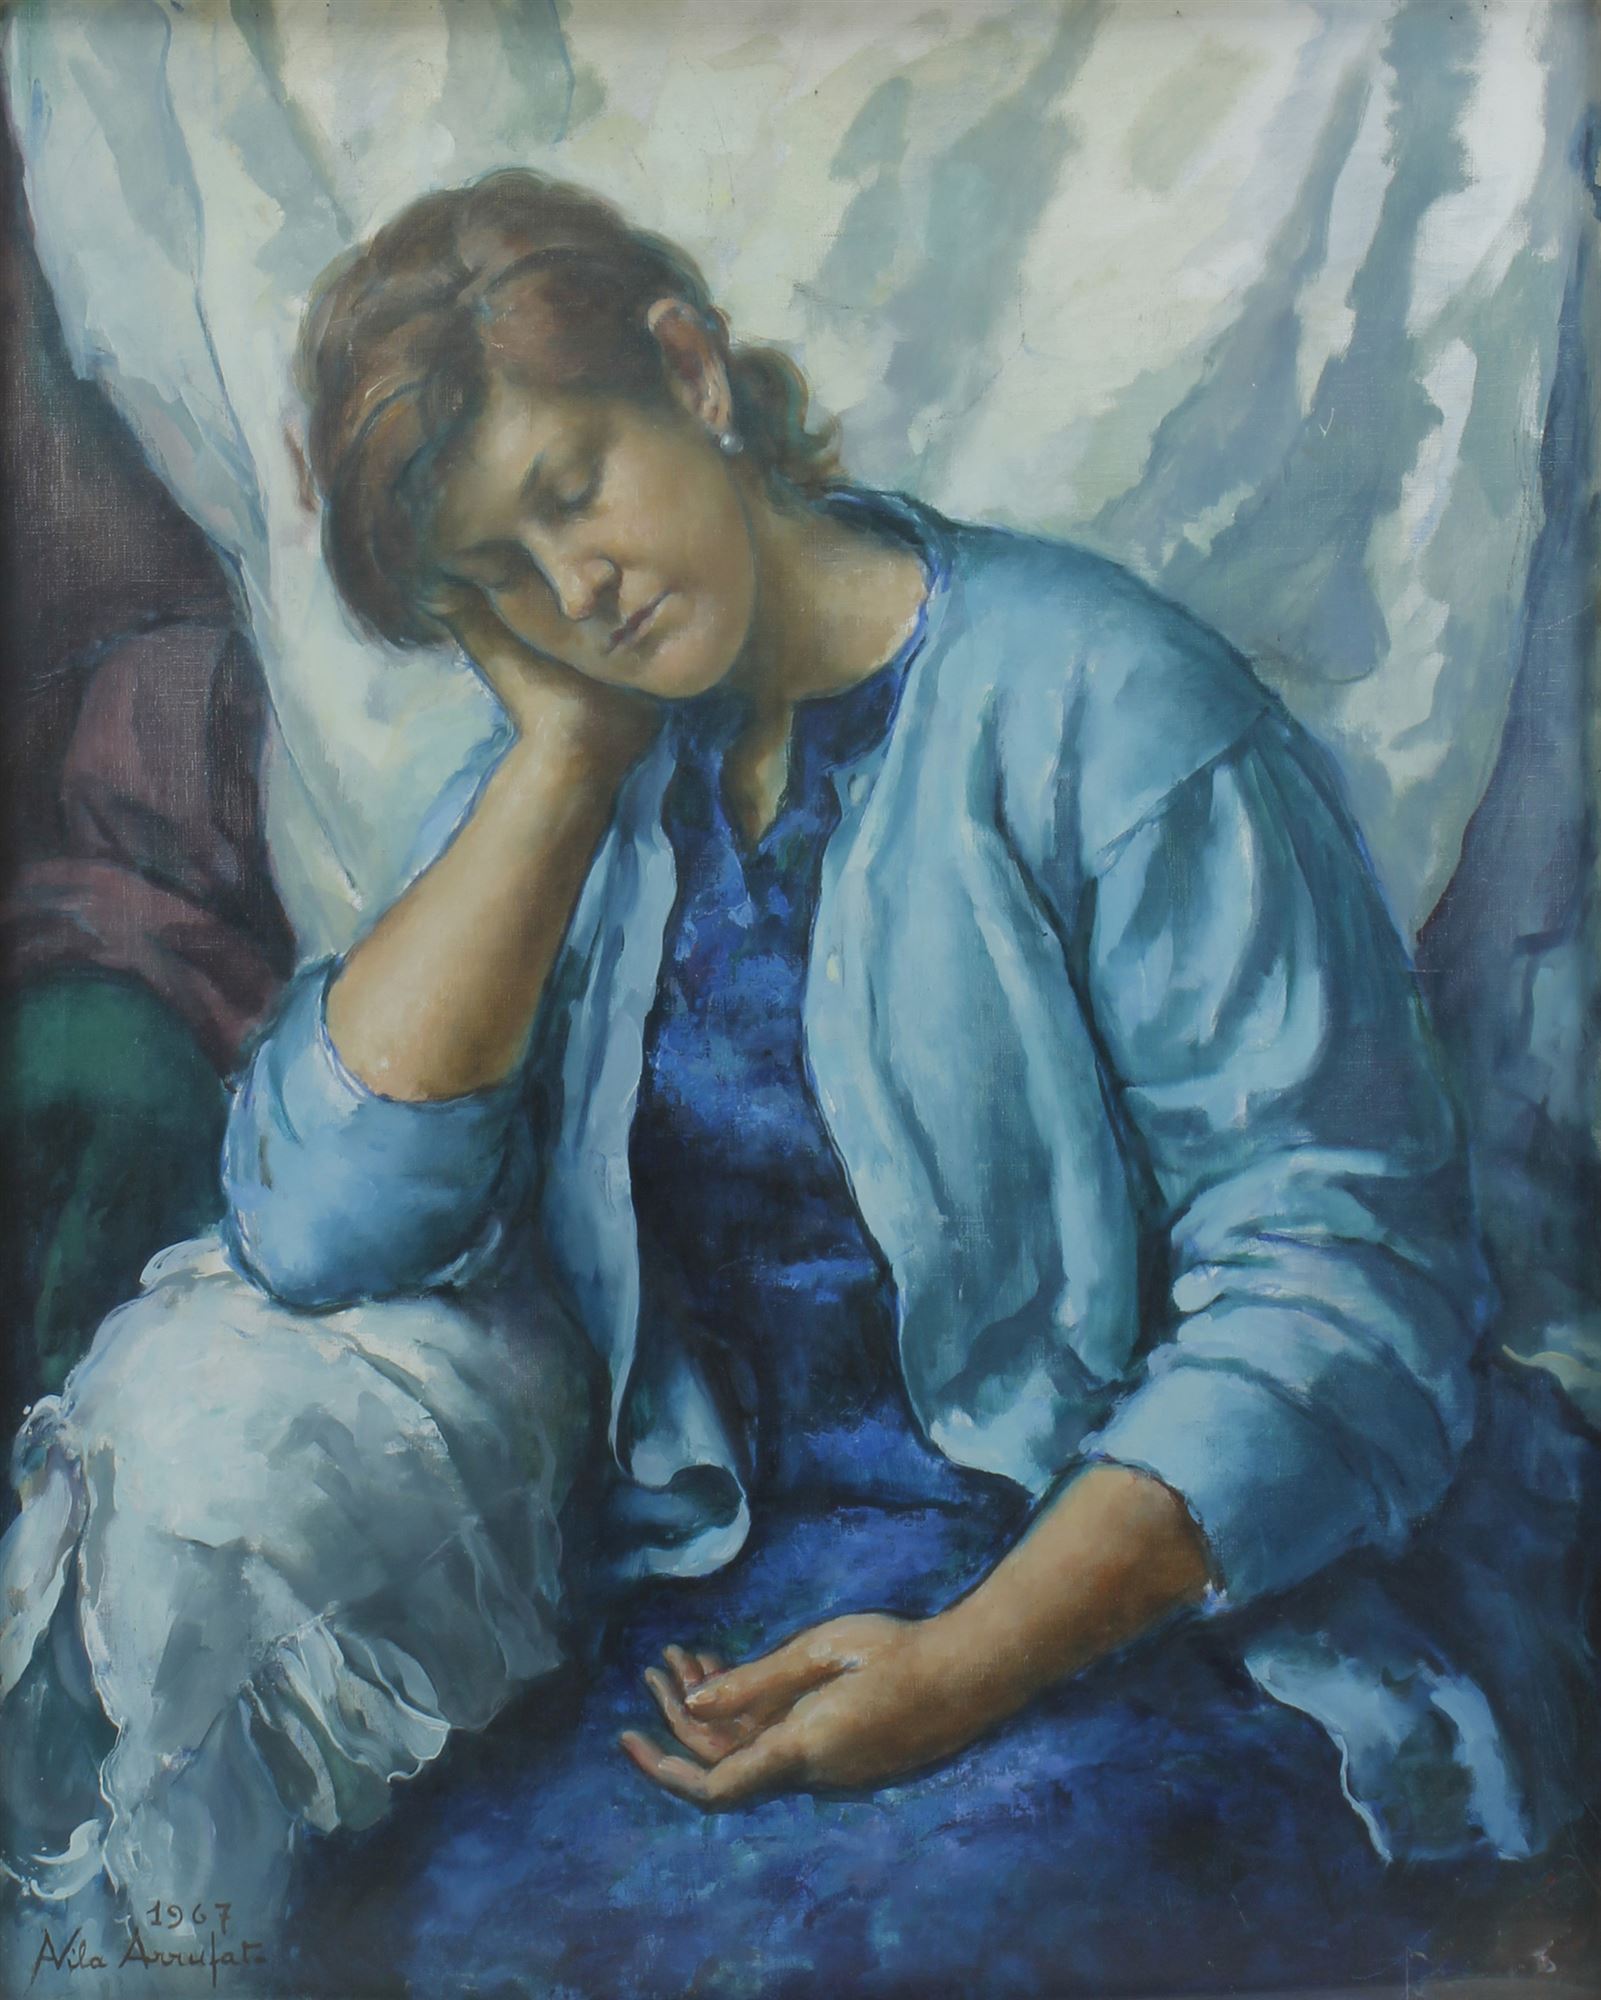 ANTONI VILA ARRUFAT (1896-1989). "NURI DORMINT", 1967.